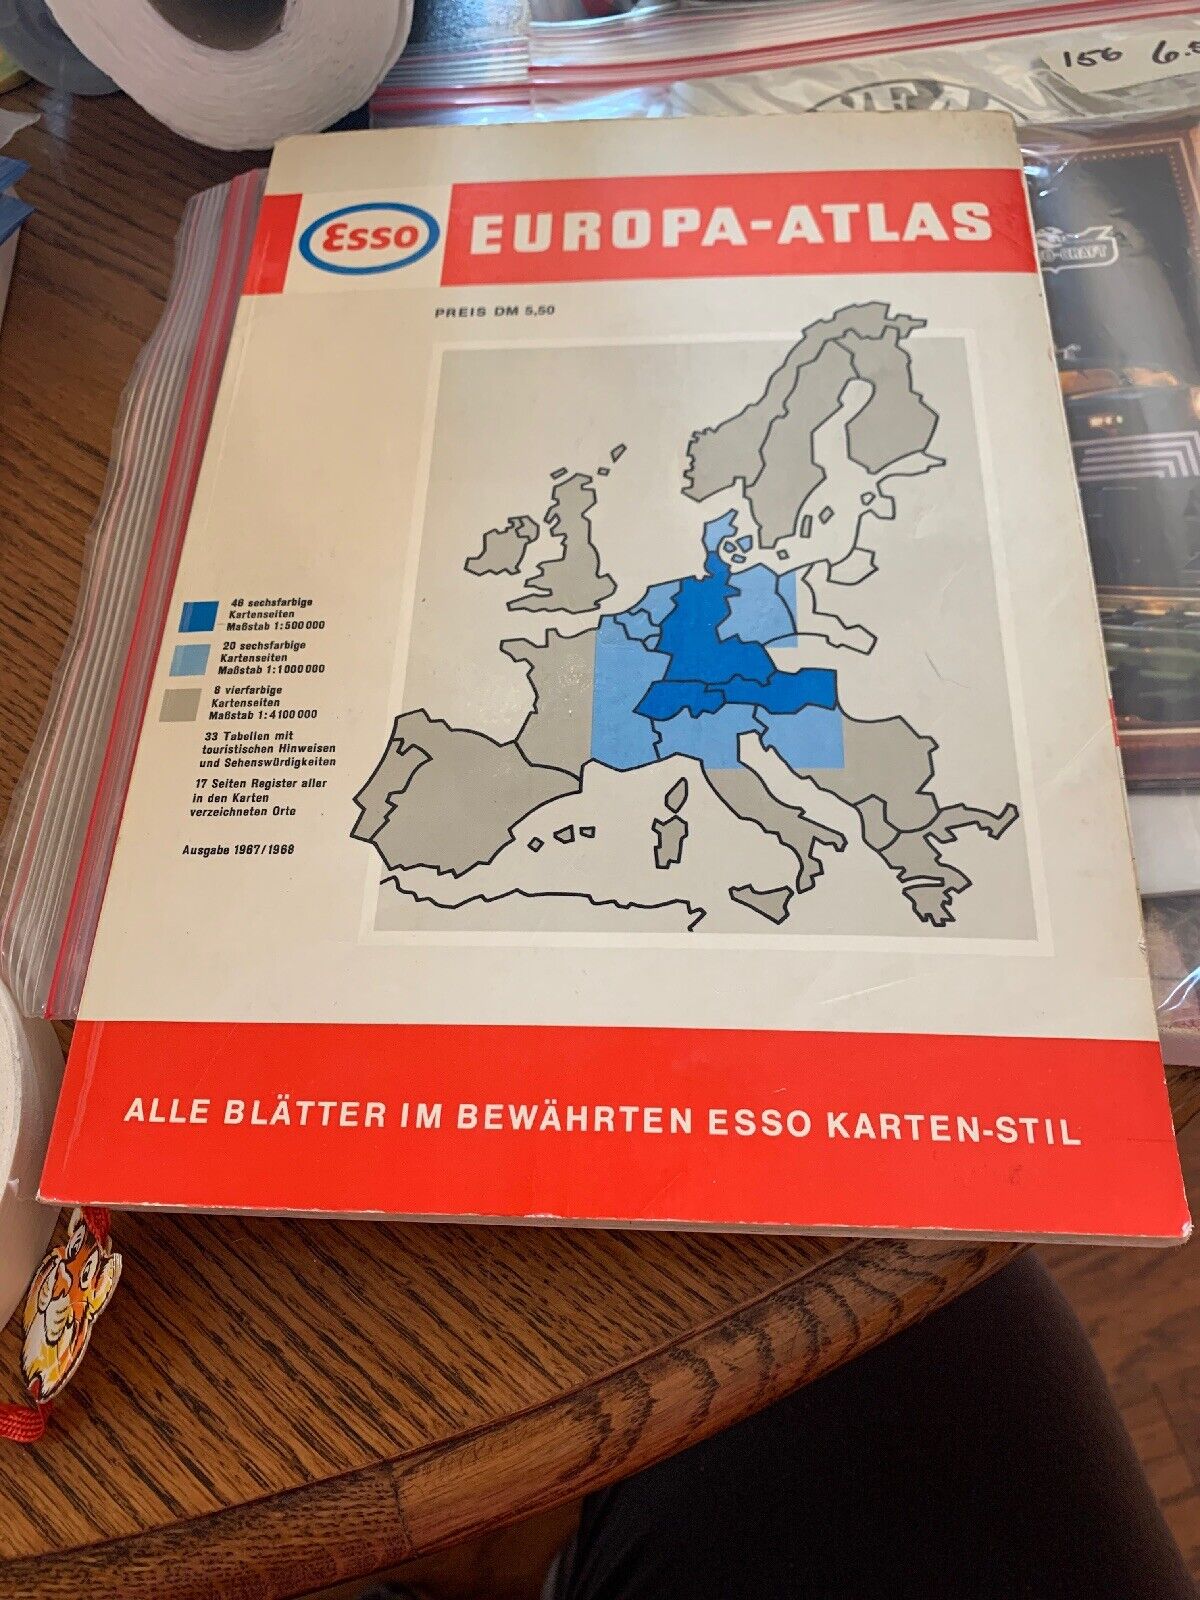 VTG 1968 ESSO Gasoline Travel Atlas Book Europa-Atlas Europe